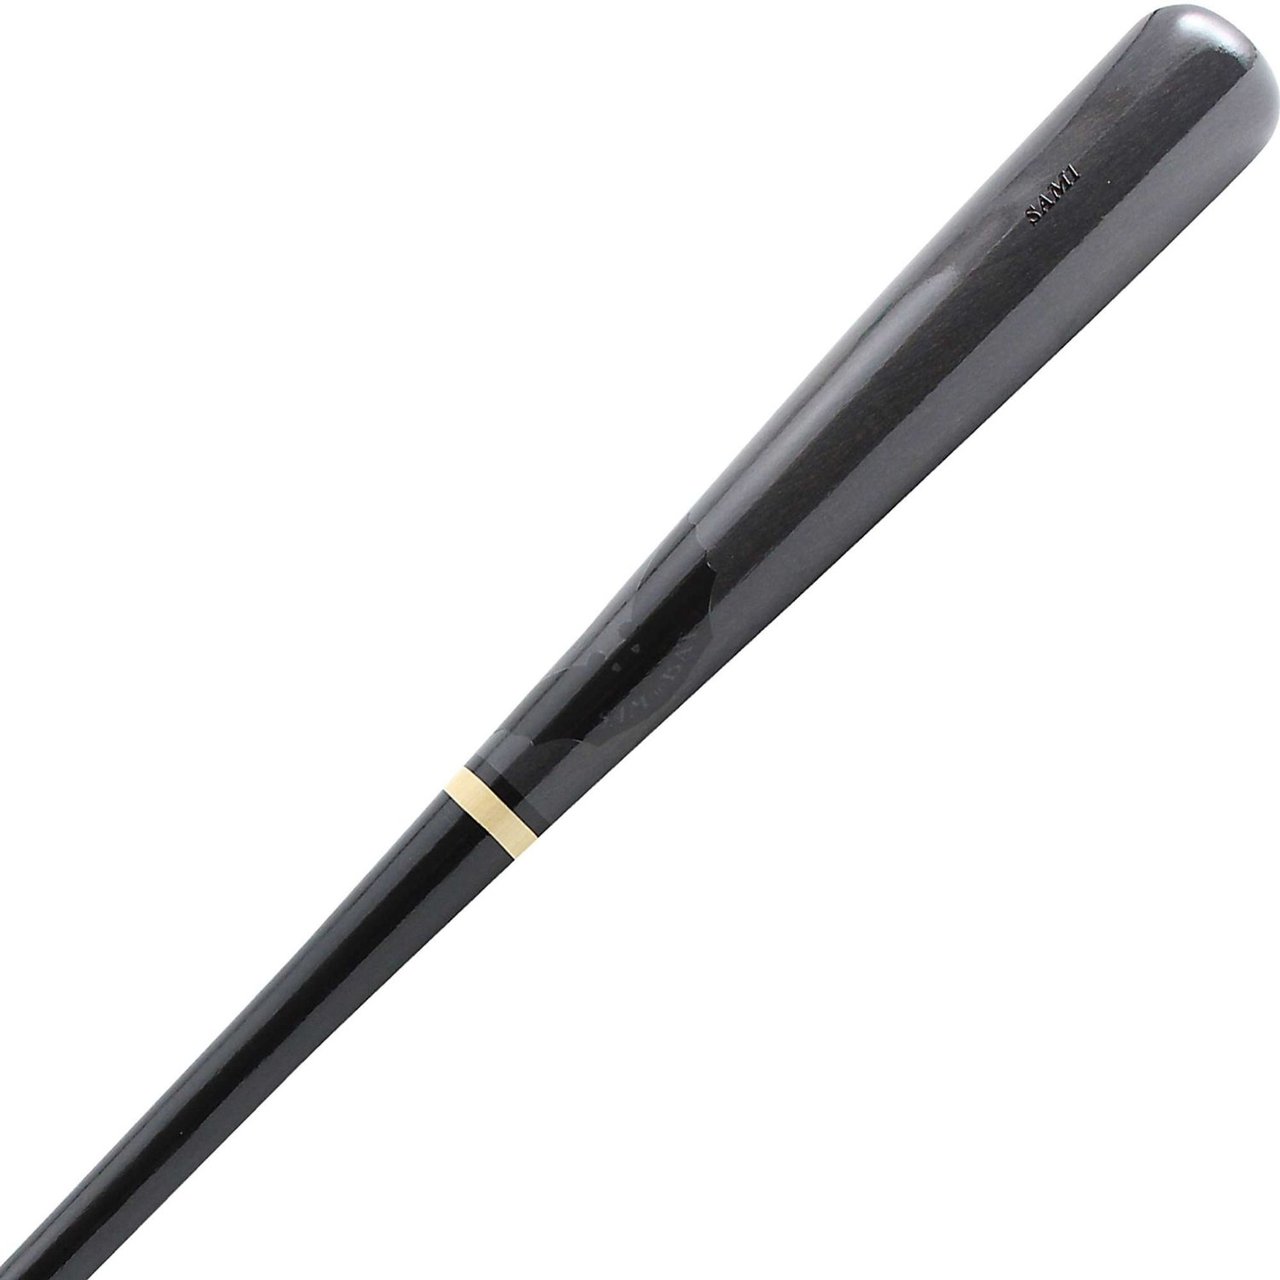 sam-bat-sam1-33-inch-wood-baseball-bat-black-grey SAM1-BKGY-33-INCH  B00LLM7J8M The SAM BAT SAM1 offers a rounded off knob with a